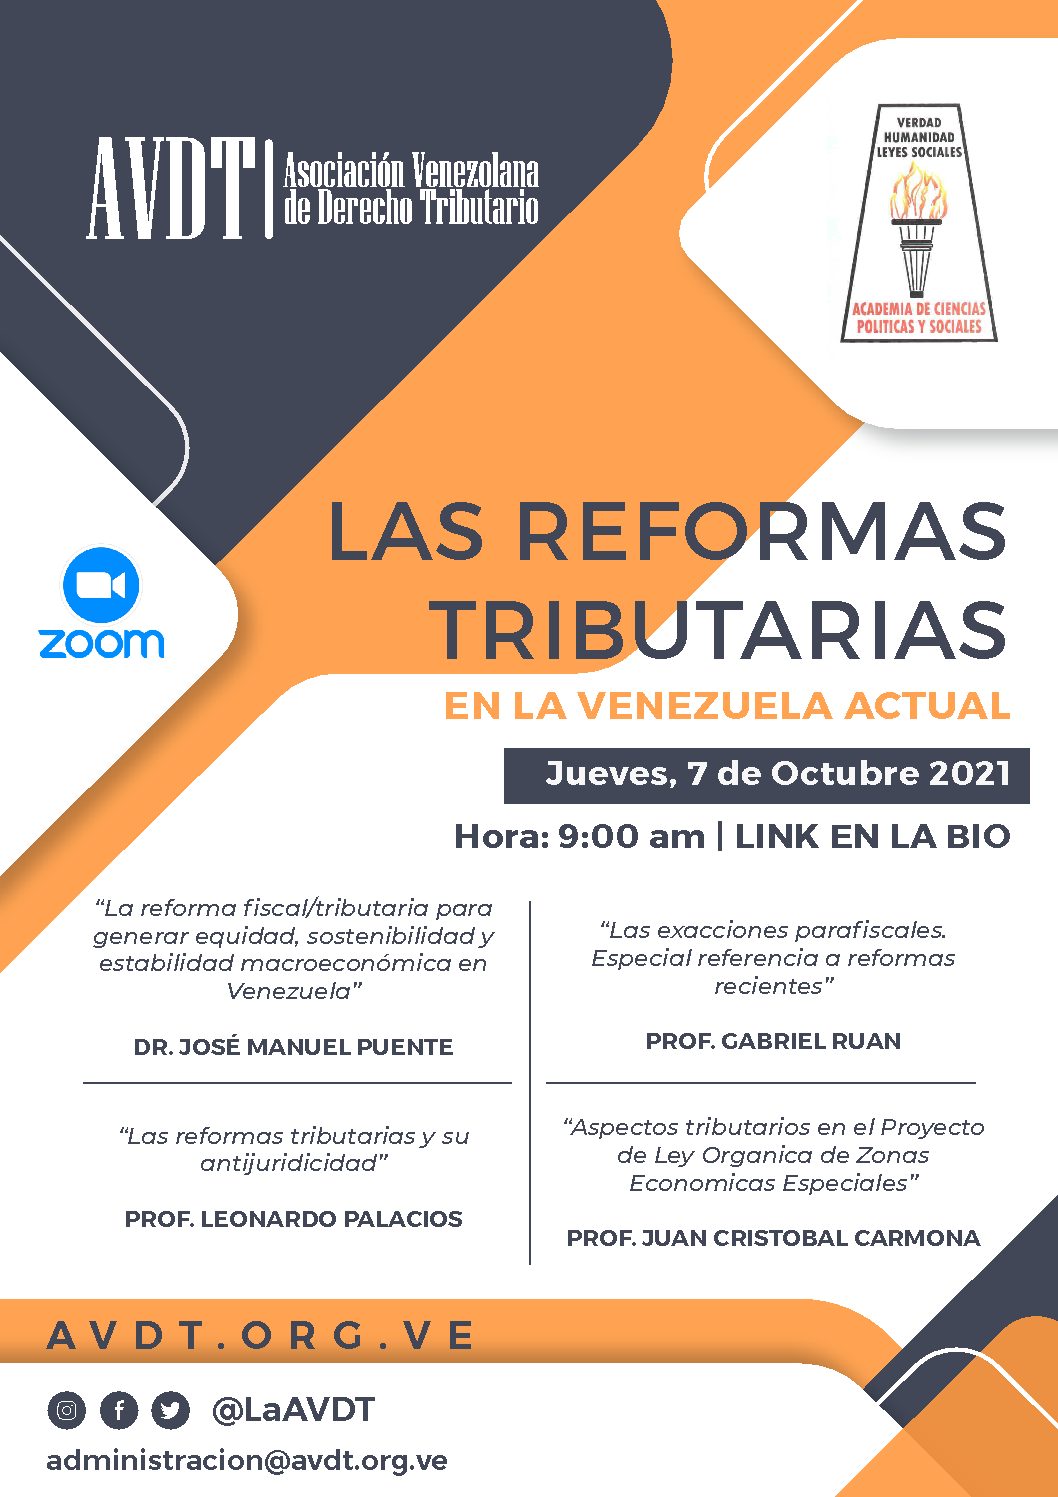 Las reformas tributarias en la Venezuela actual. Jueves, 7 de octubre de 2021. Hora: 9:00 a.m.